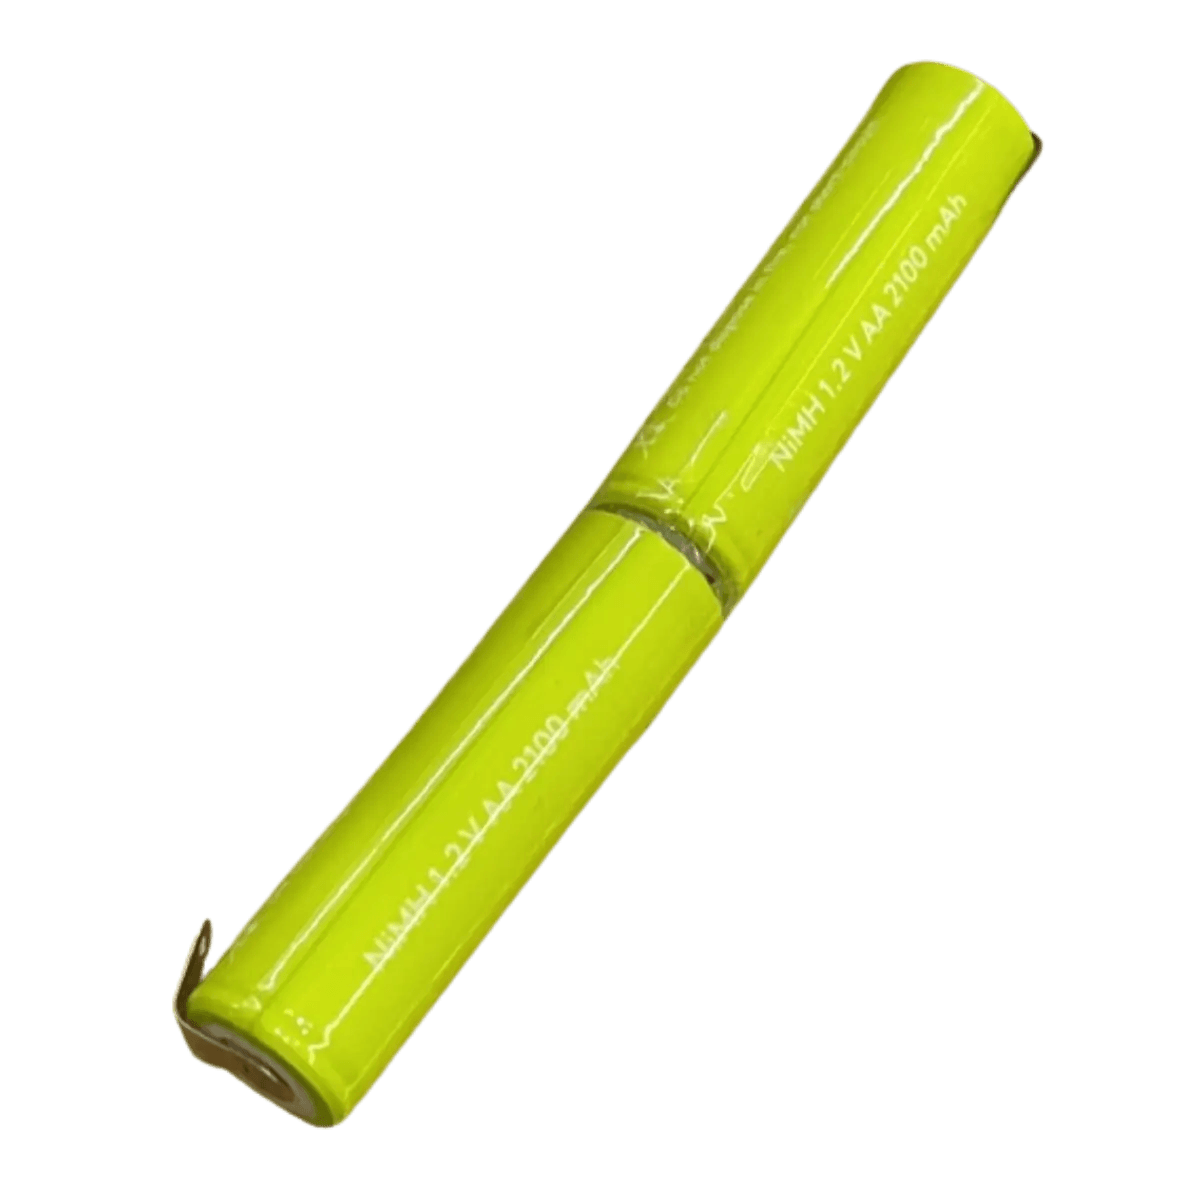 Batterie Ni-Mh 2.4V 2100mAh avec languettes à souder